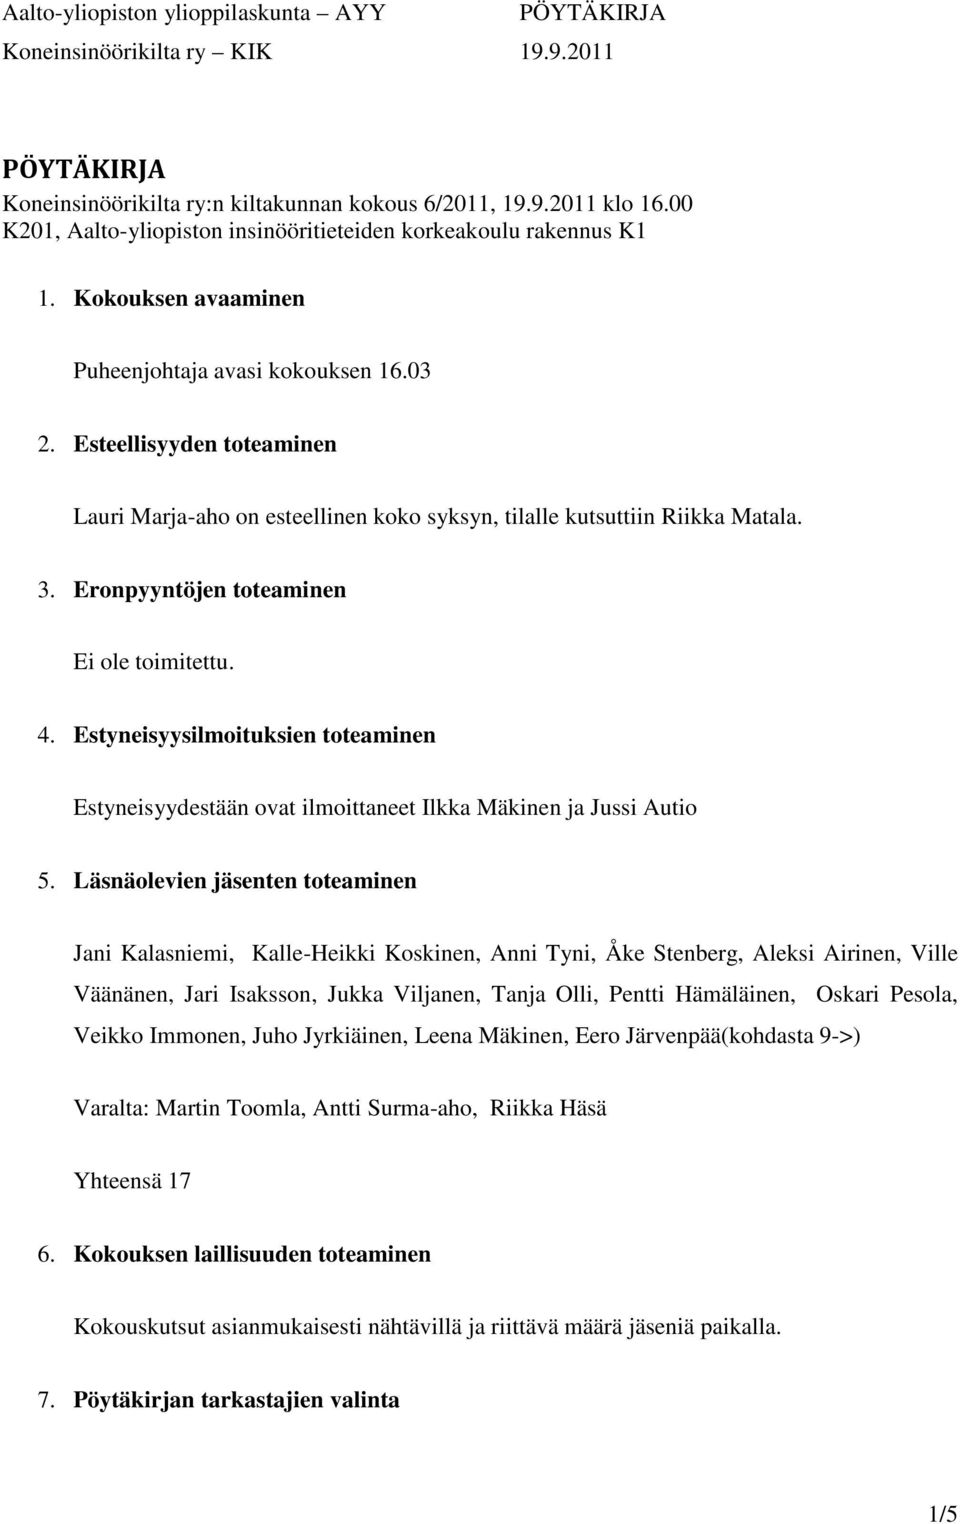 Estyneisyysilmoituksien toteaminen Estyneisyydestään ovat ilmoittaneet Ilkka Mäkinen ja Jussi Autio 5.